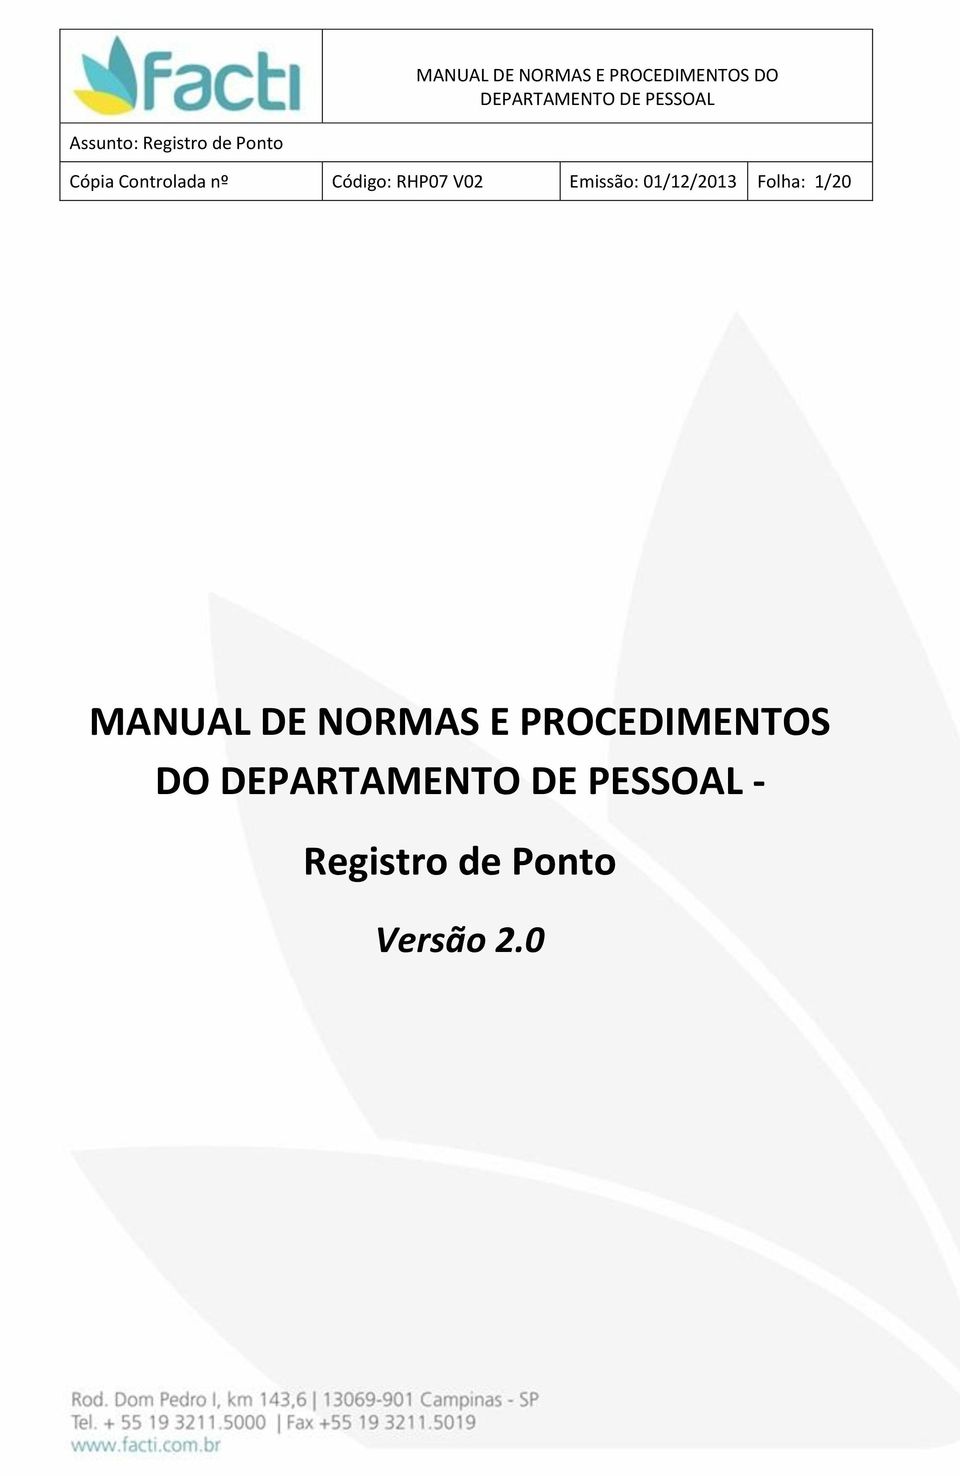 1/20 MANUAL DE NORMAS E